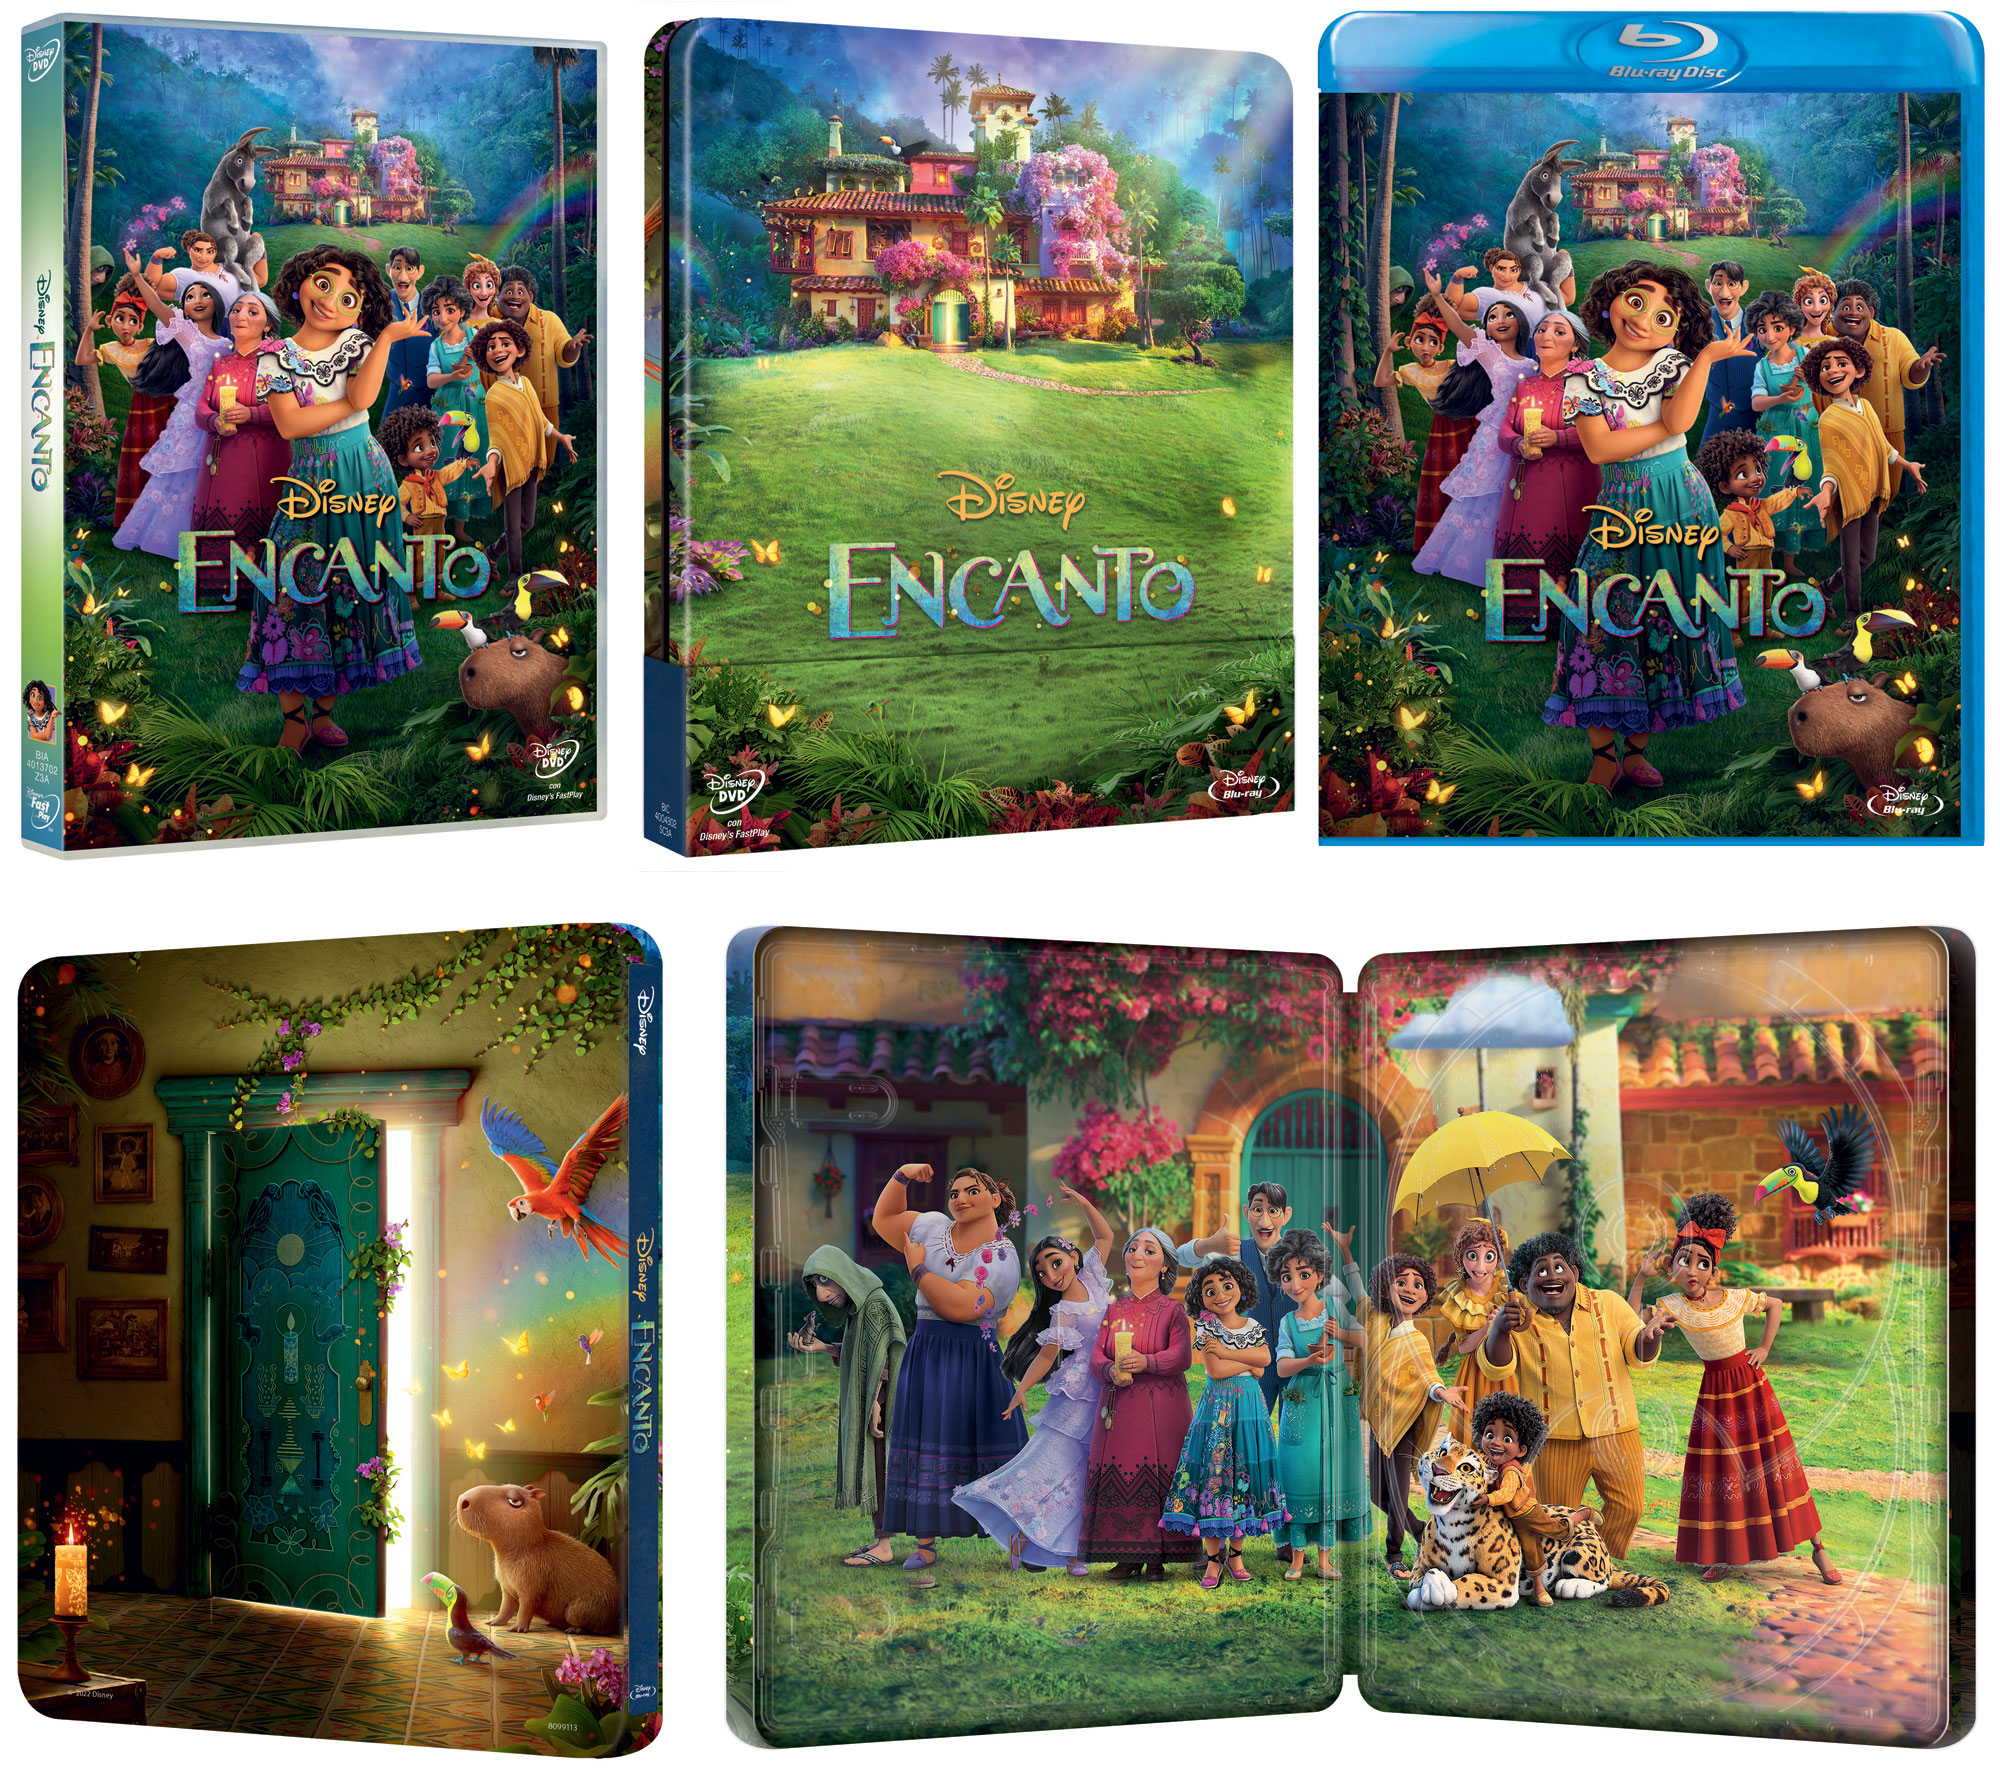 Encanto della Disney in Blu-Ray, DVD e Blu-Ray Steelbook